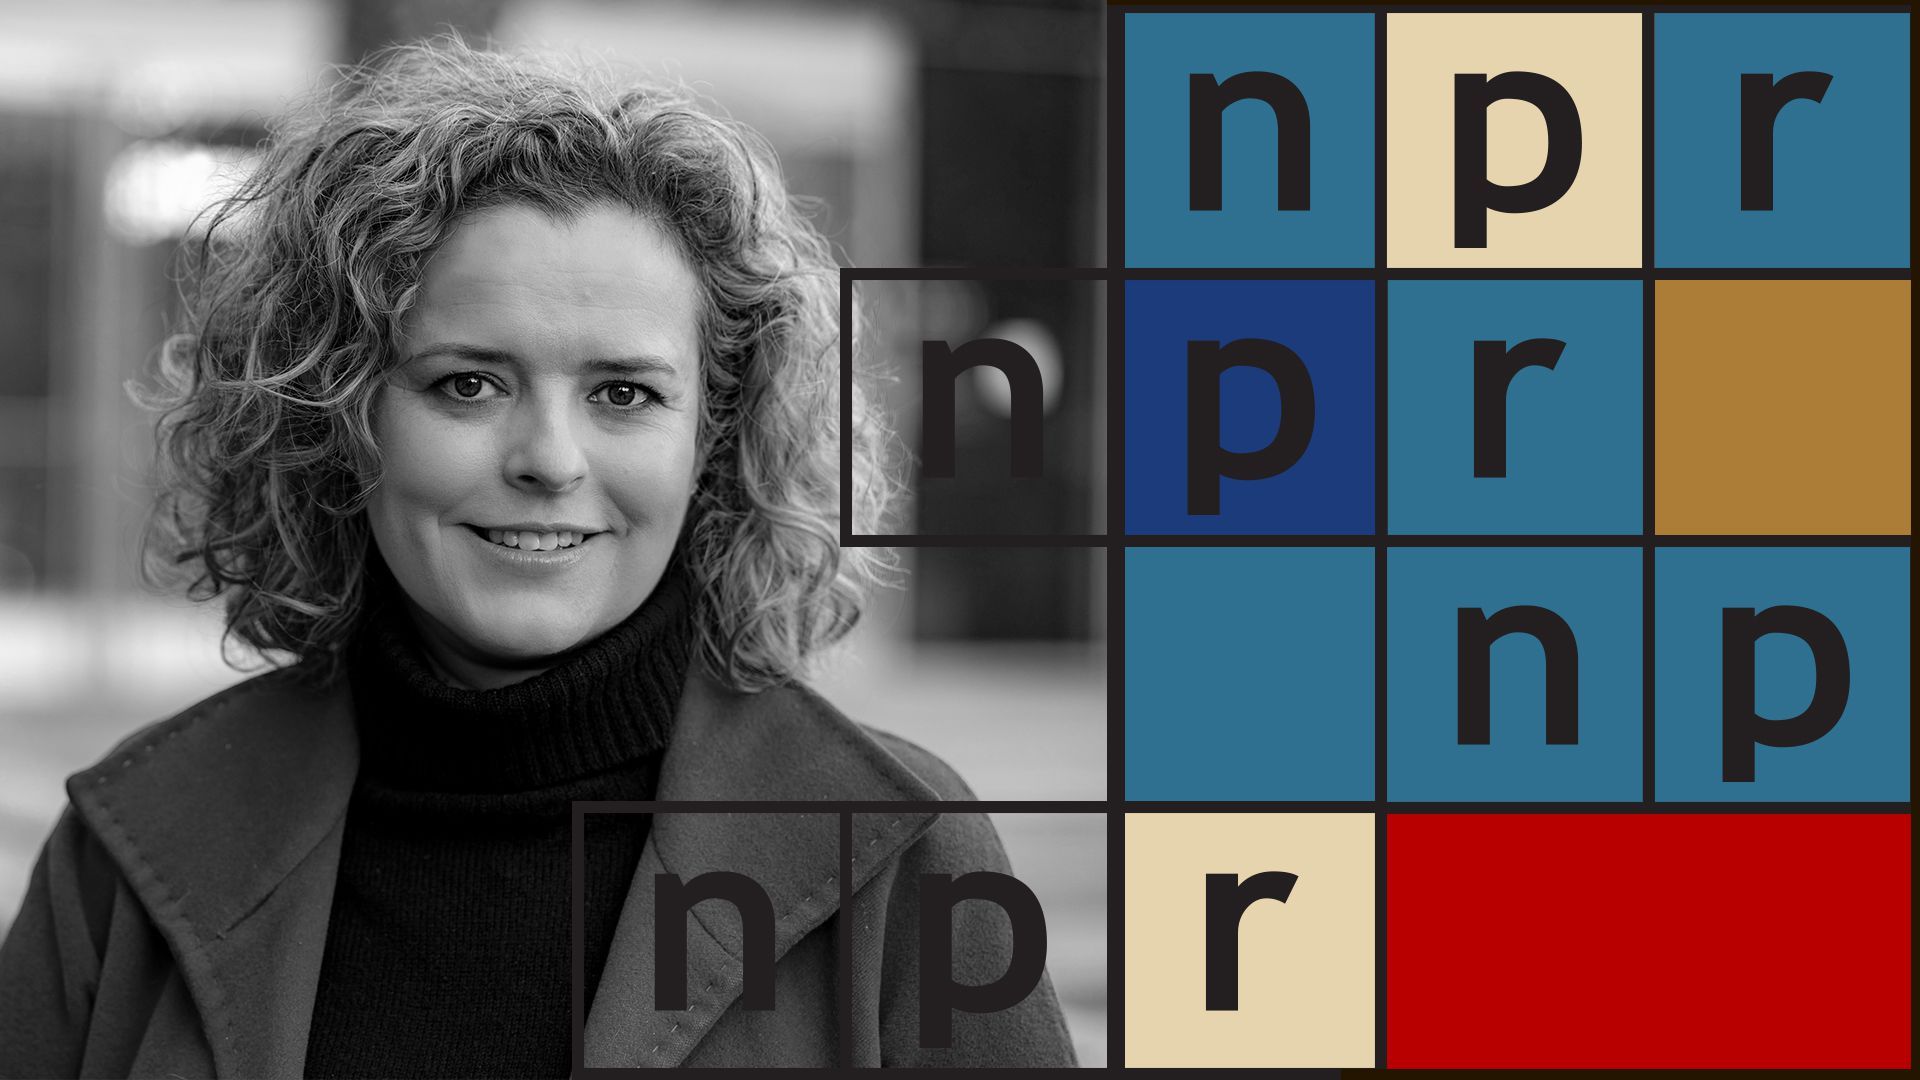 Photo illustration of Isabel Lara with NPR logo.